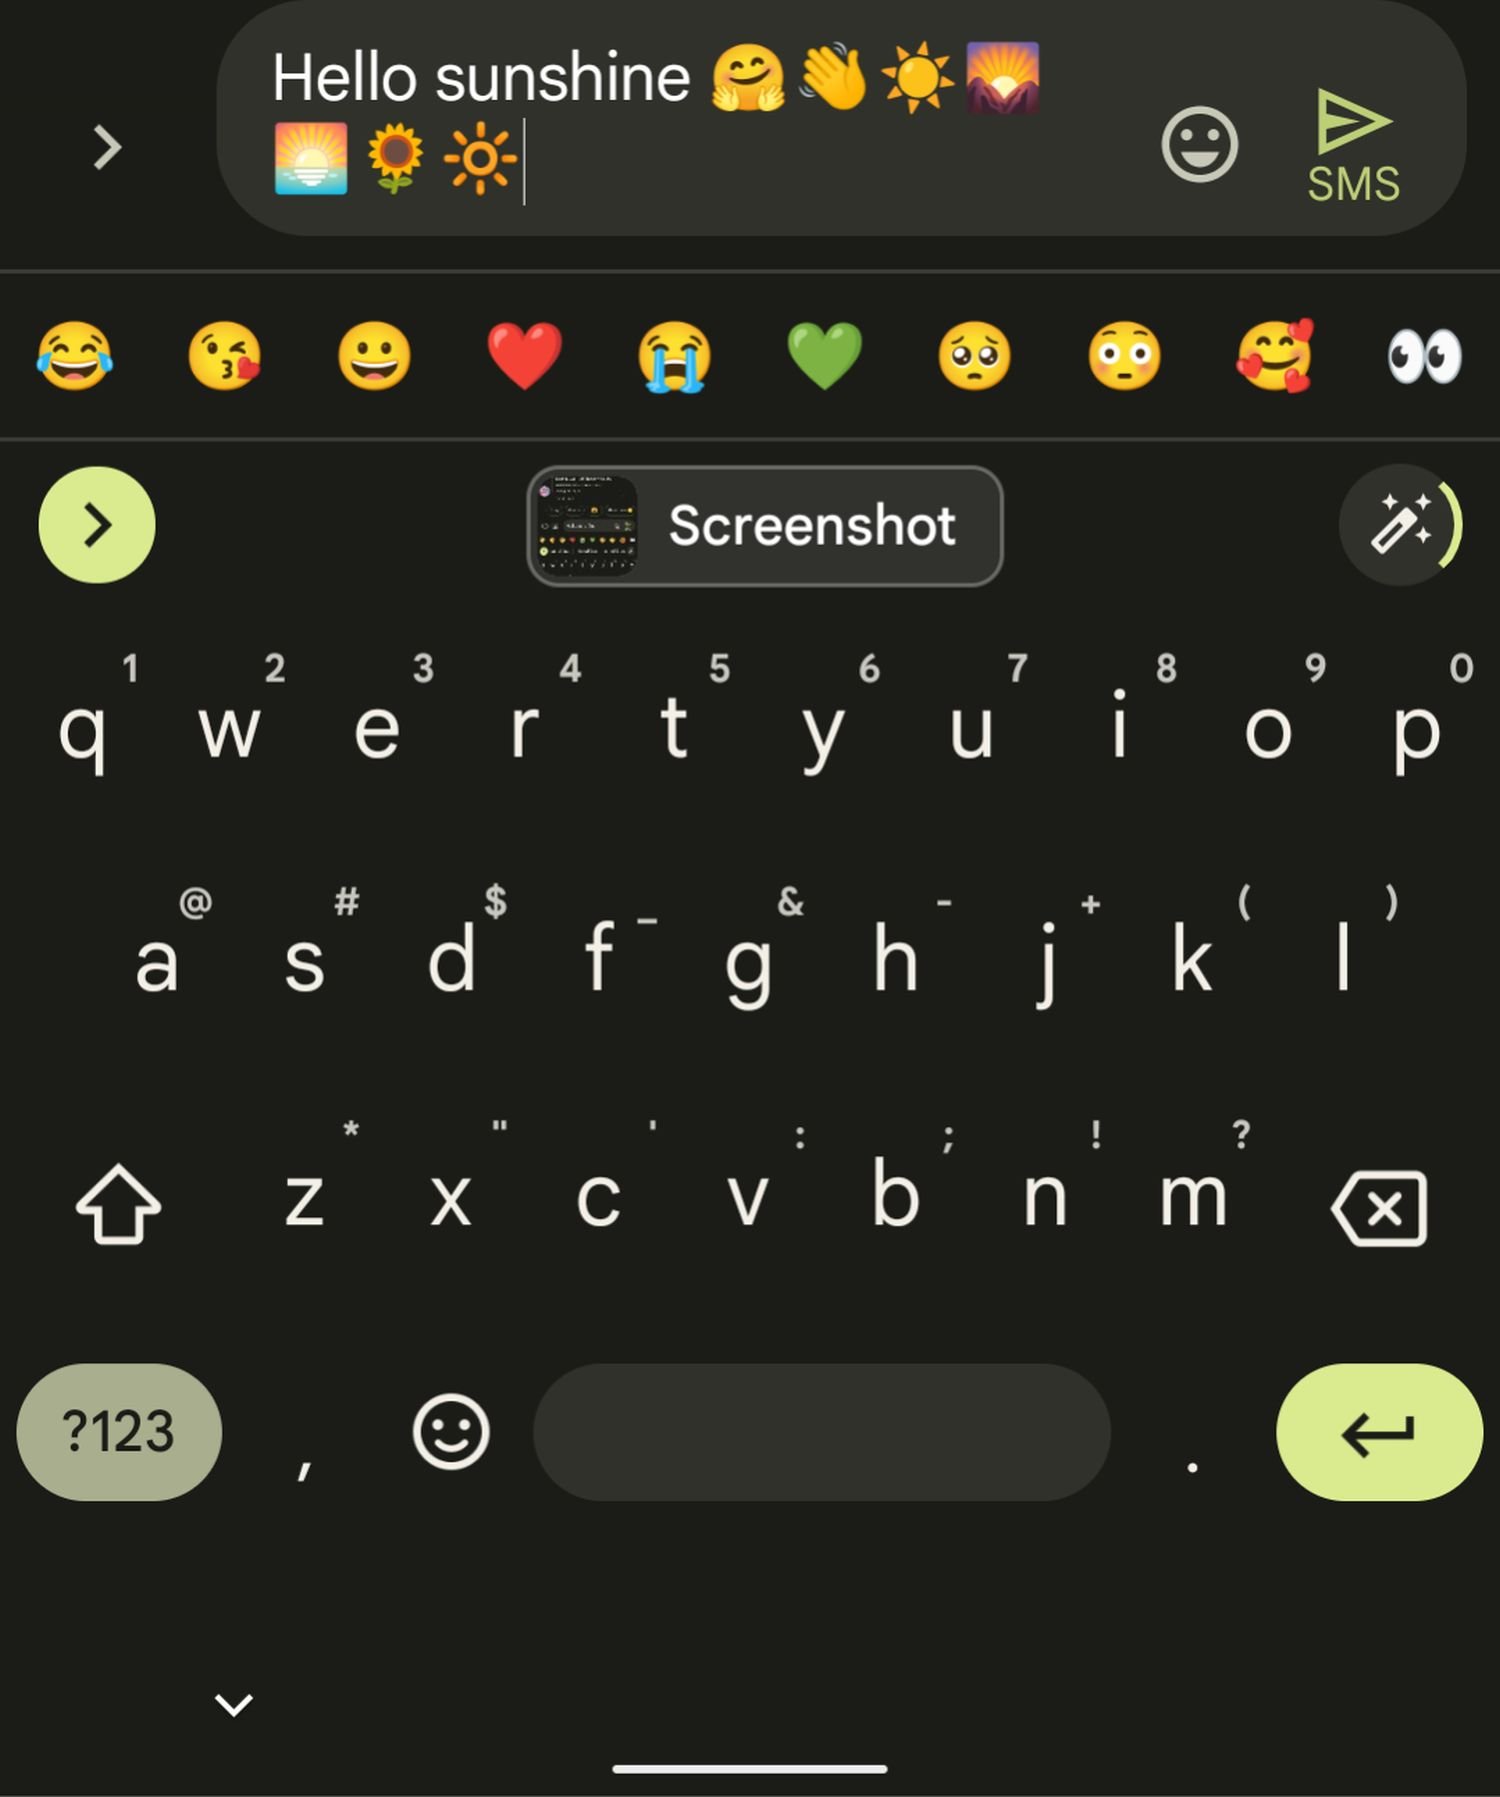 Klappe Dårlig faktor telt Gboard: Googles Tastatur-App ersetzt Text durch Emojis - ein Bild sagt mehr  als Tausend Worte? (Screenshots) - GWB